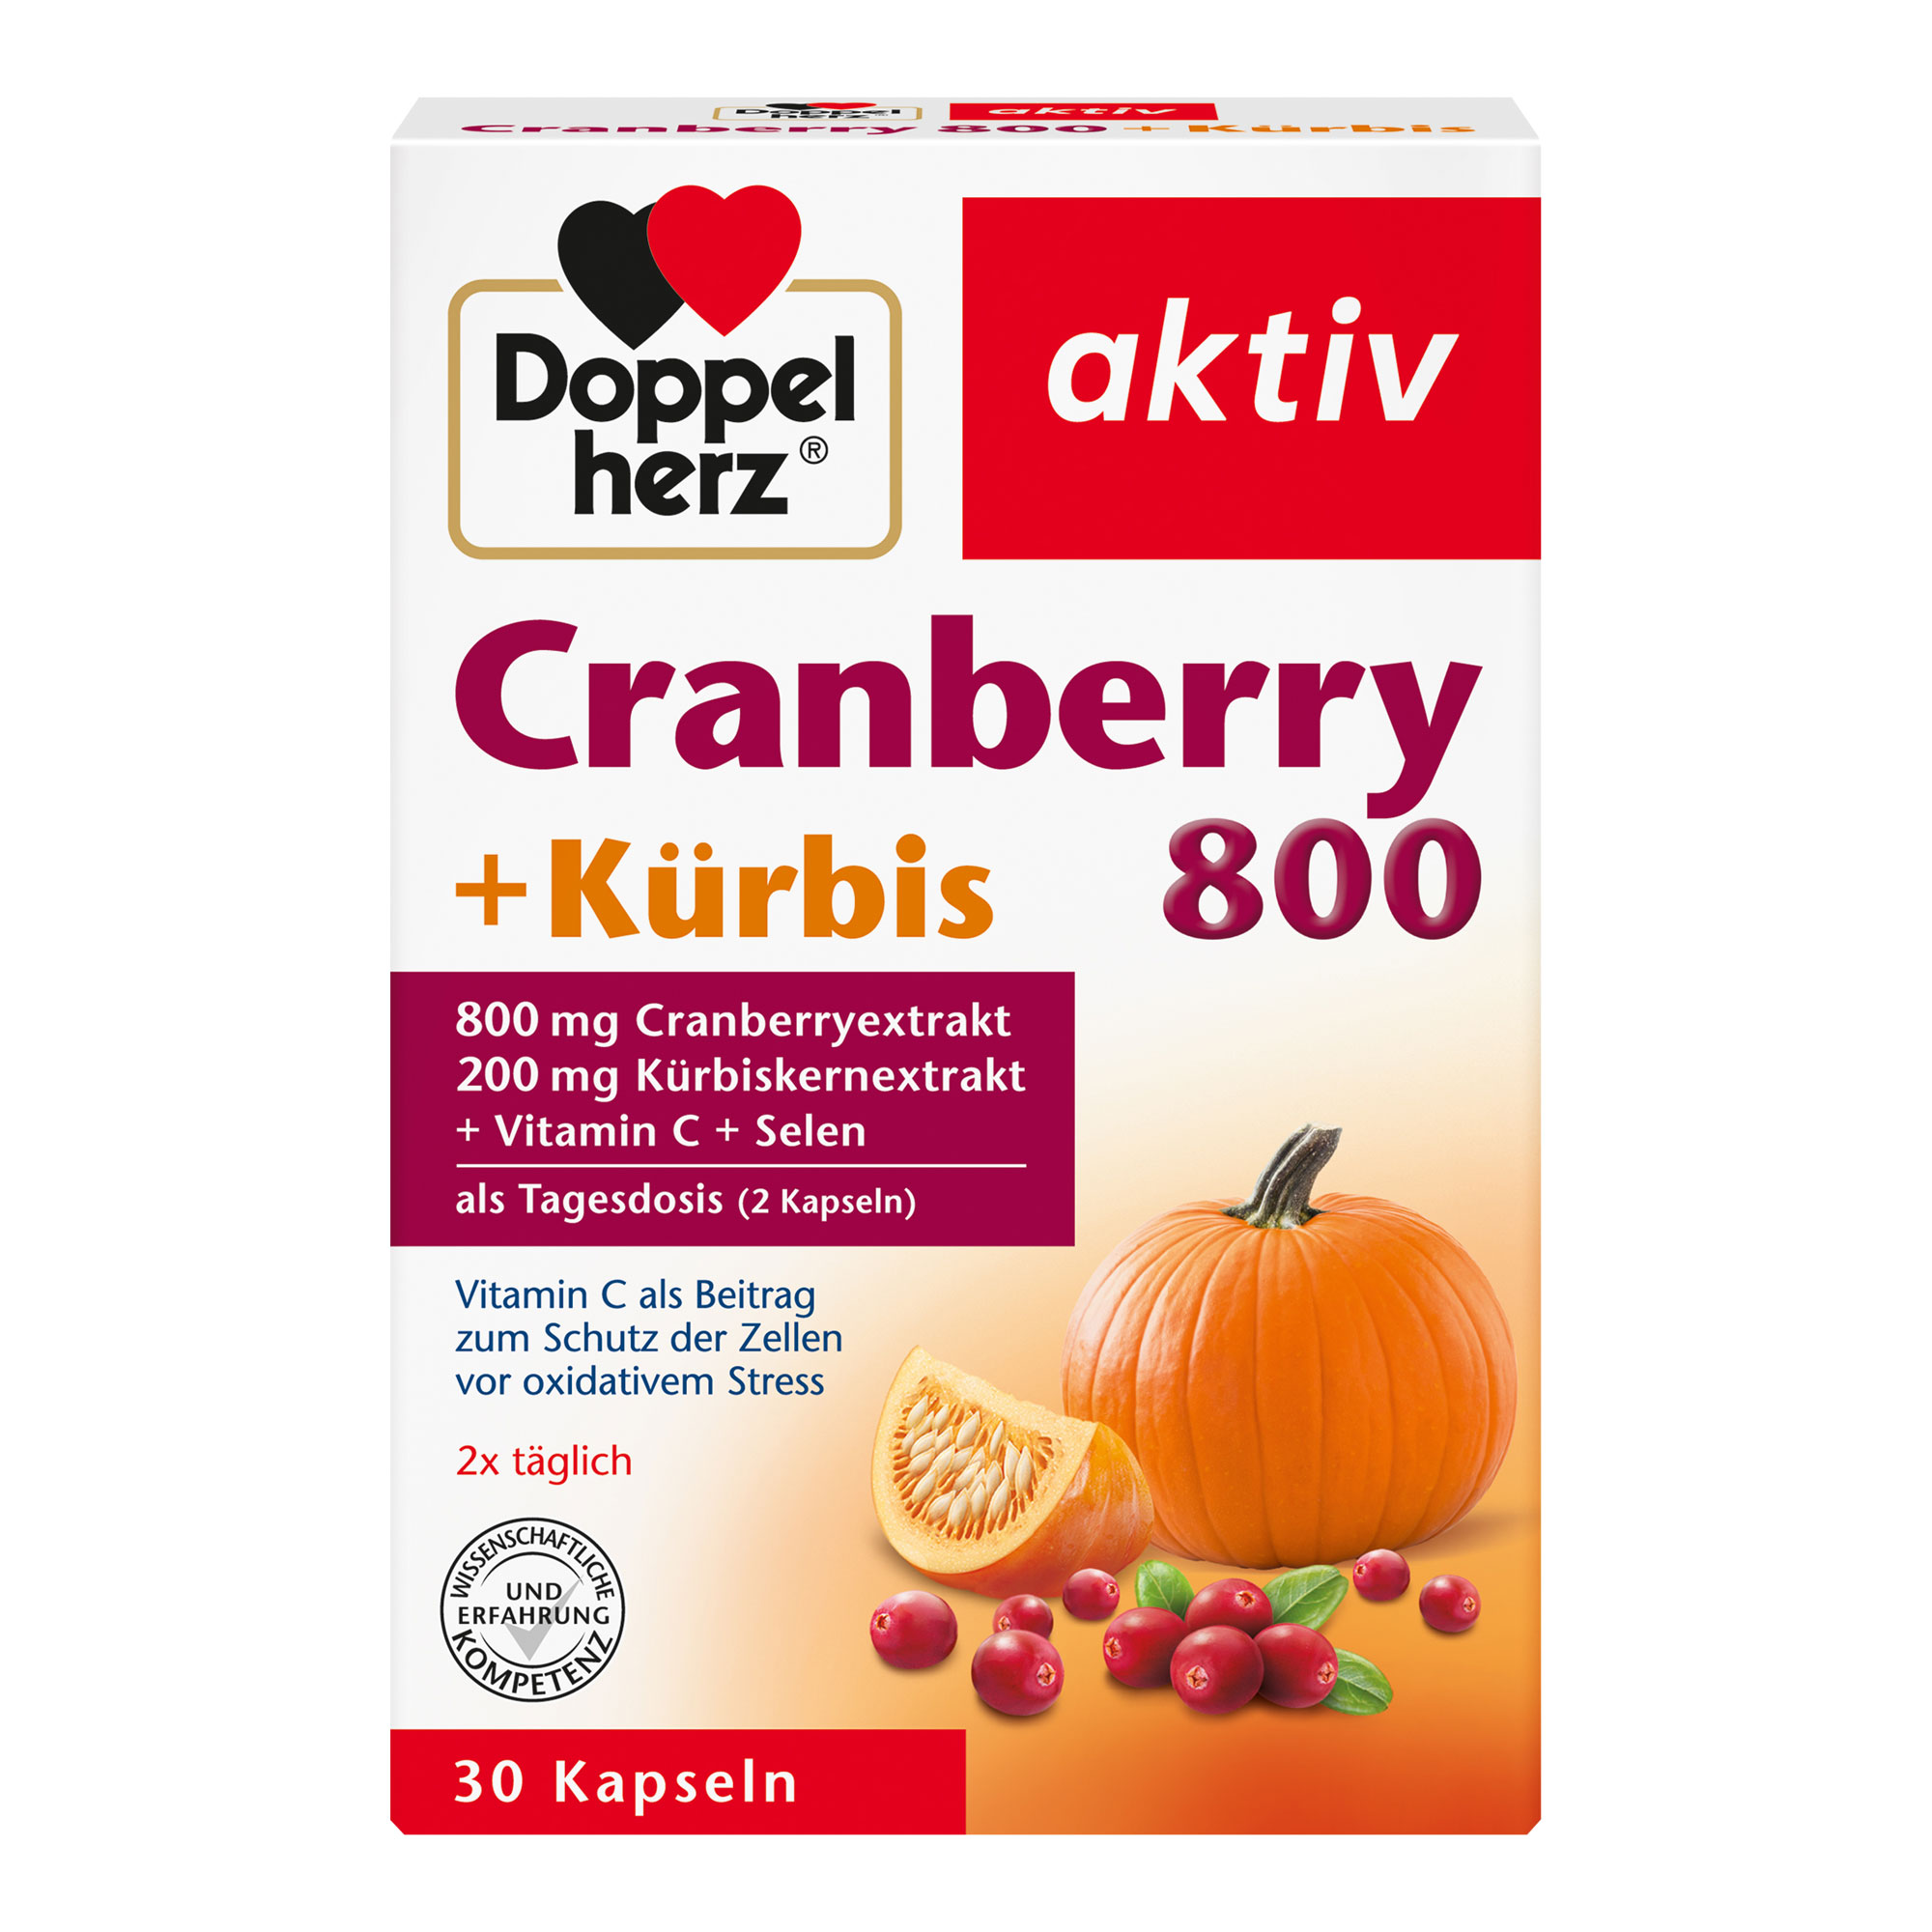 Nahrungsergänzungsmittel mit Cranberryextrakt, Kürbiskernextrakt, Vitamin C und Selen.